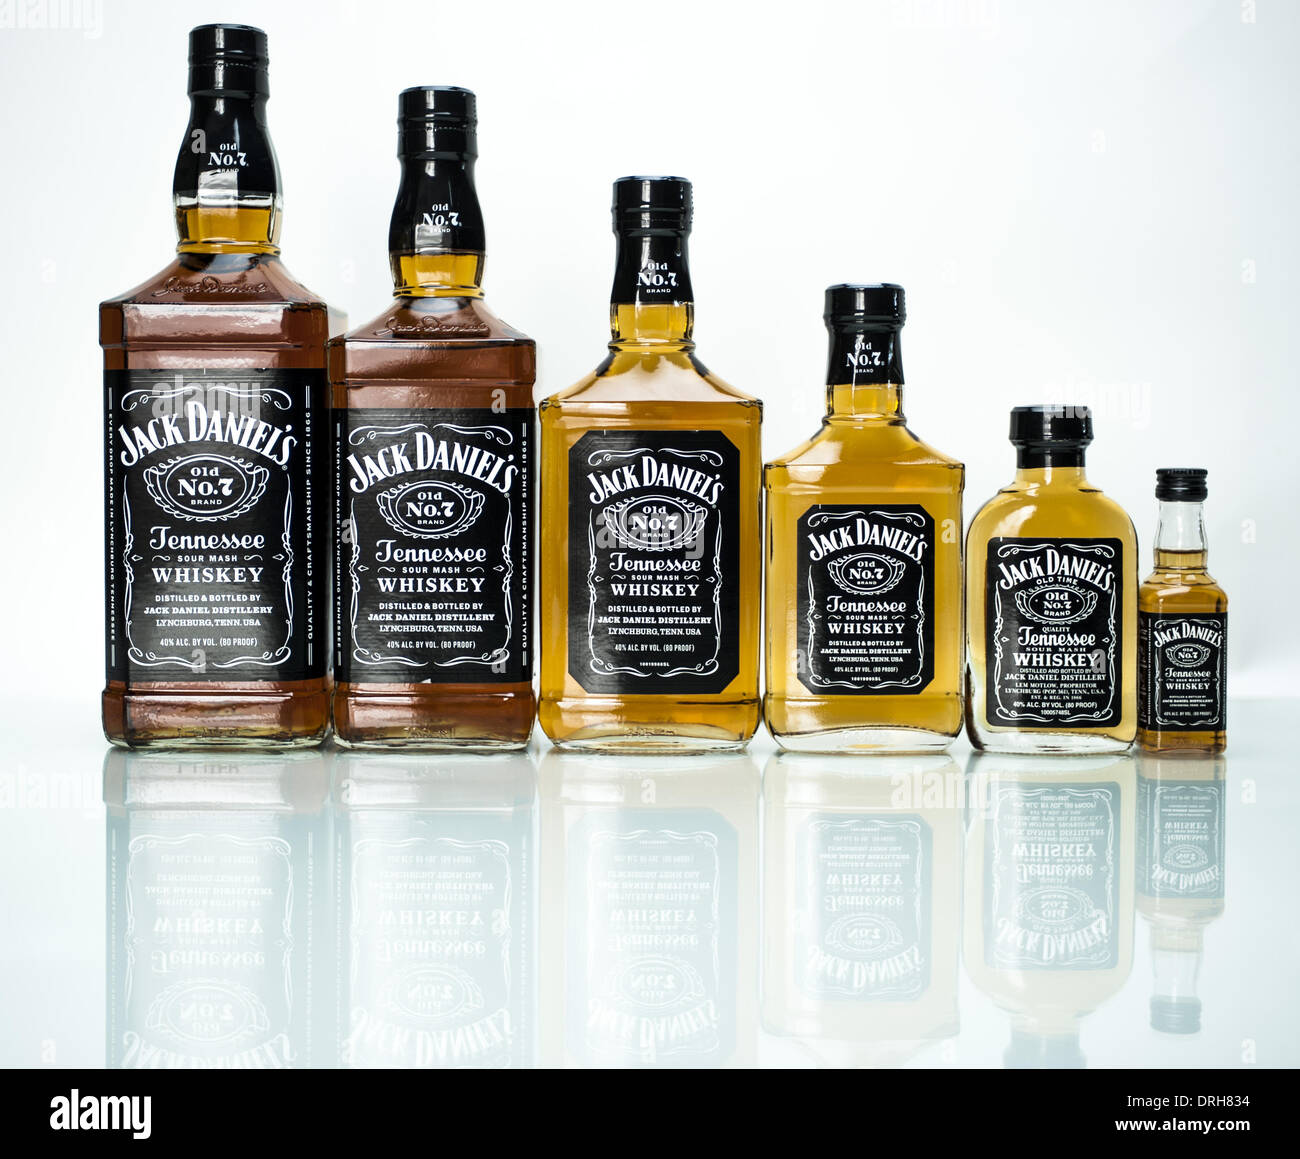 Lynchburg, Tennessee, USA. 26 janvier, 2014. Jack Daniel's Tennessee  Whiskey Sour Mash est distillé à Lynchburg, Tennessee et a rapporté le plus  de whiskey américain de vente dans le monde. En 2013,